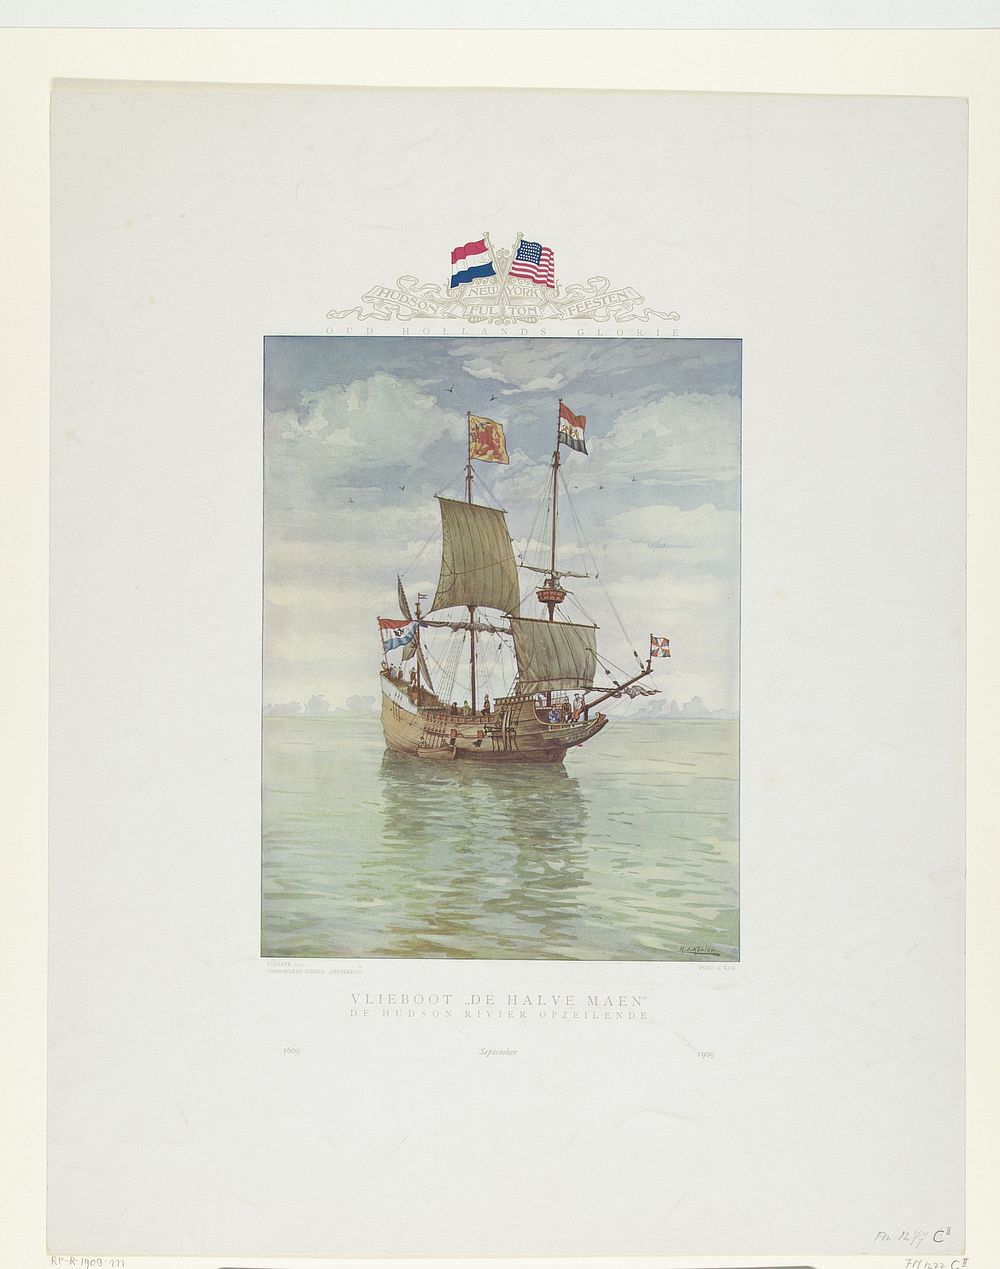 Het schip van Henry Hudson op de Hudson rivier, 1609 (1909) by H J Köhler, Adrianus Kok and Kunst en Handelsdrukkerij…